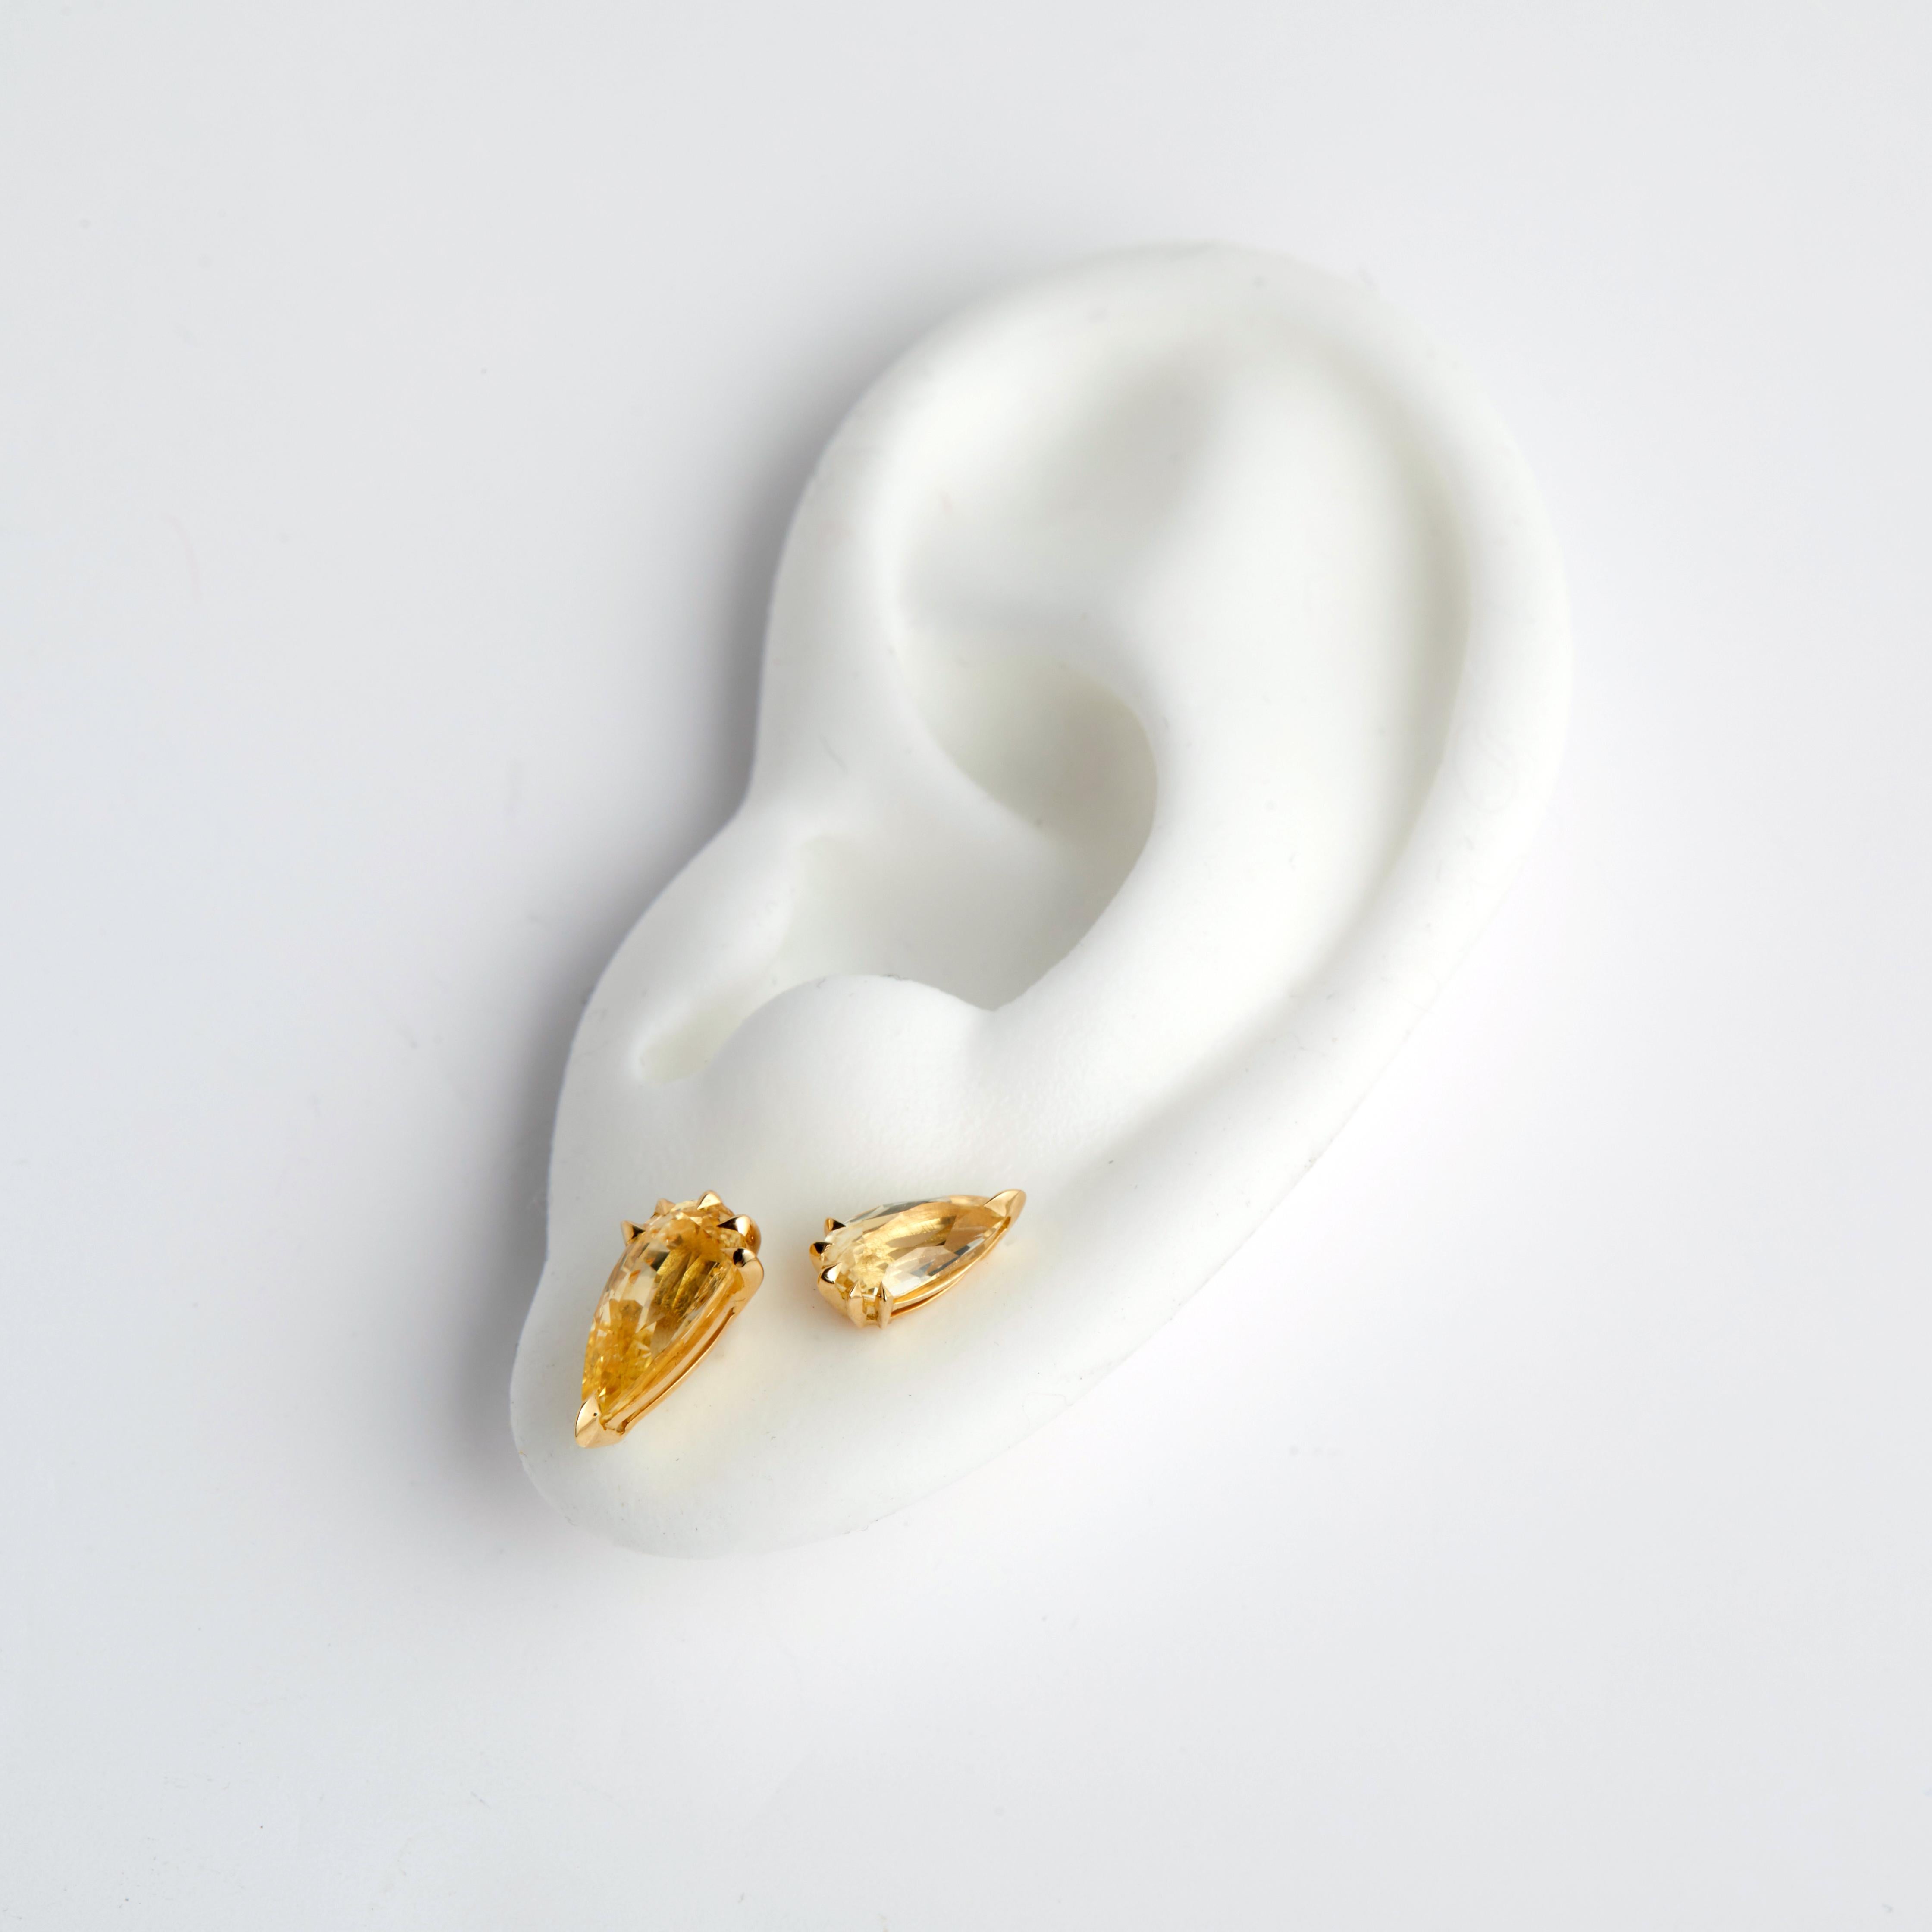 Ces boucles d'oreilles sont uniques.

Boucles d'oreilles en or jaune 18ct avec saphirs jaunes de 2,6ct, sélectionnés à la main par Kasun lors de son voyage d'été au Sri Lanka en 2023.

Fabriqué de bout en bout à Londres, à partir de métaux précieux